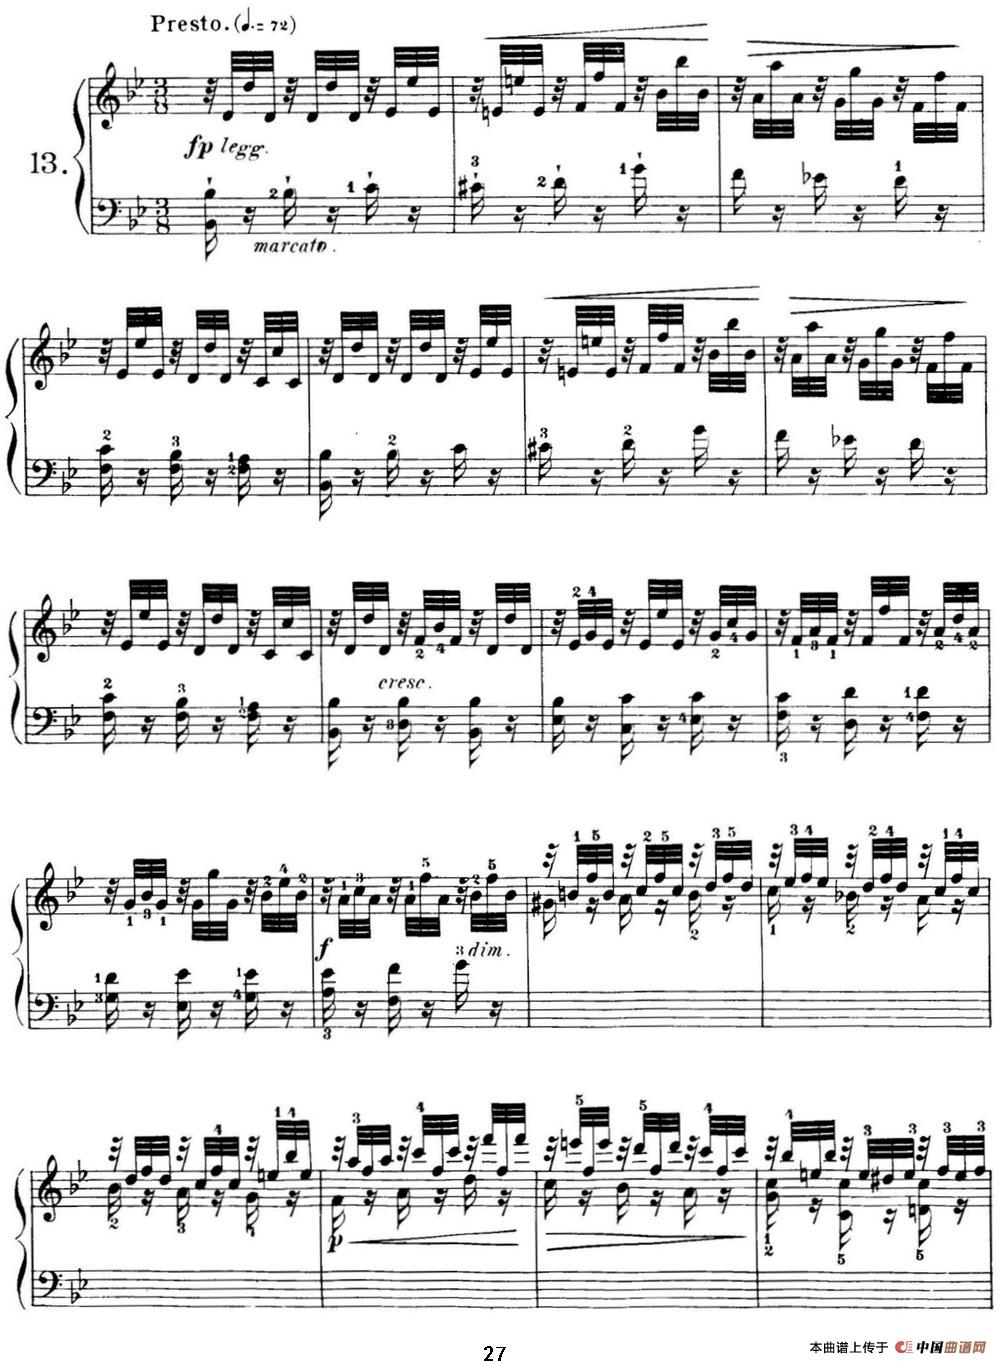 40首车尔尼Op.299钢琴快速练习曲（NO.13）(1)_C299_页面_027.jpg